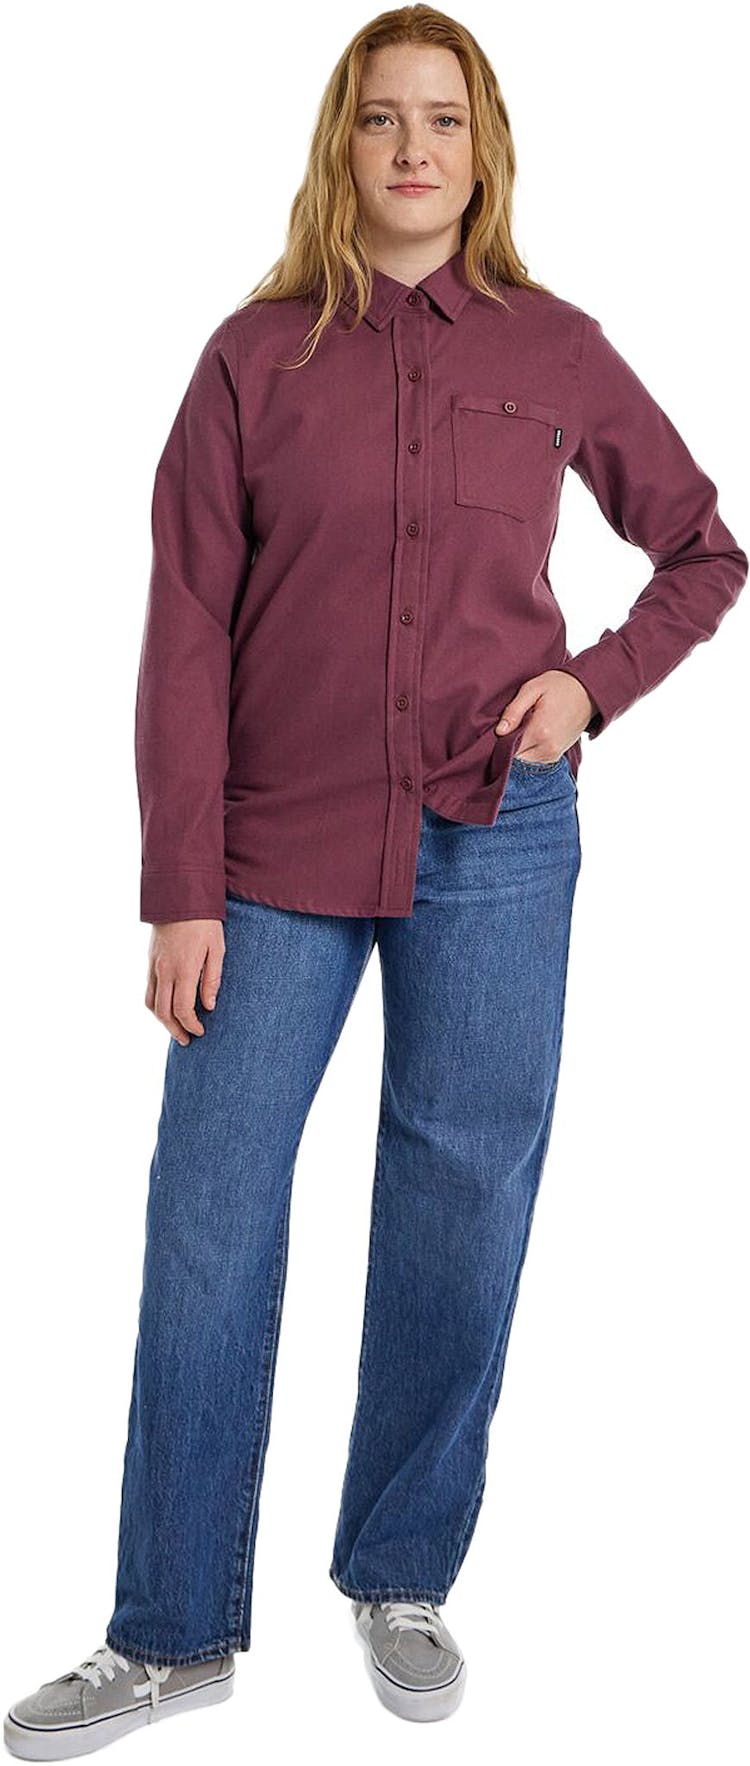 Numéro de l'image de la galerie de produits 4 pour le produit Chemises en flanelle à manches longues préférées - Femme